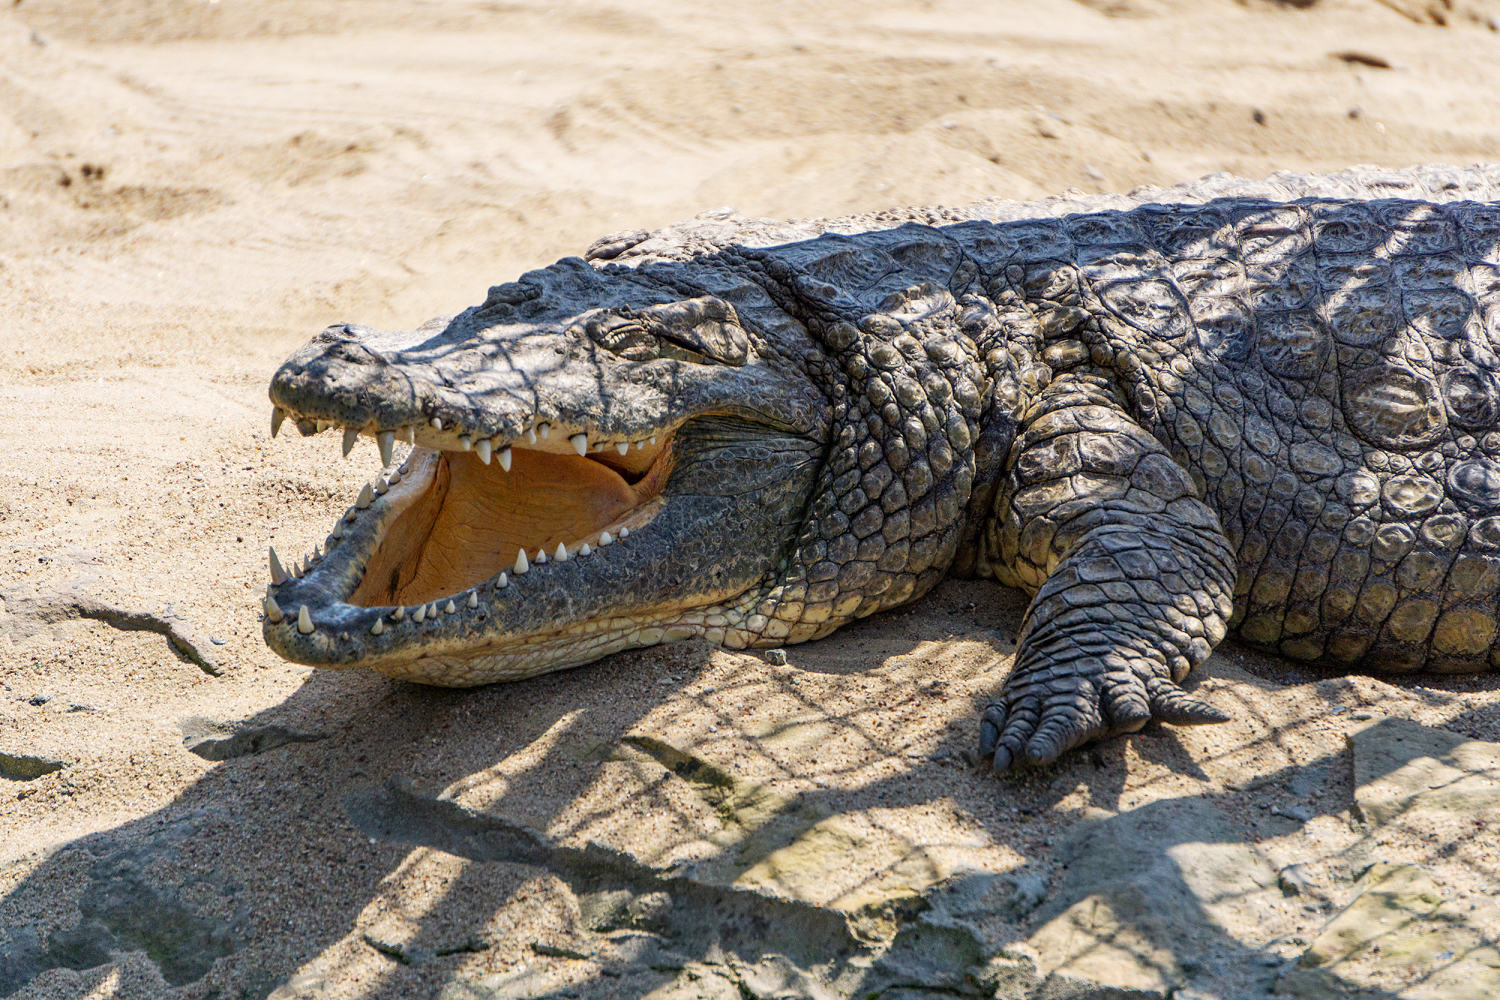 Australian rangers shoot dead 14-foot crocodile after it killed a girl swimming in a creek